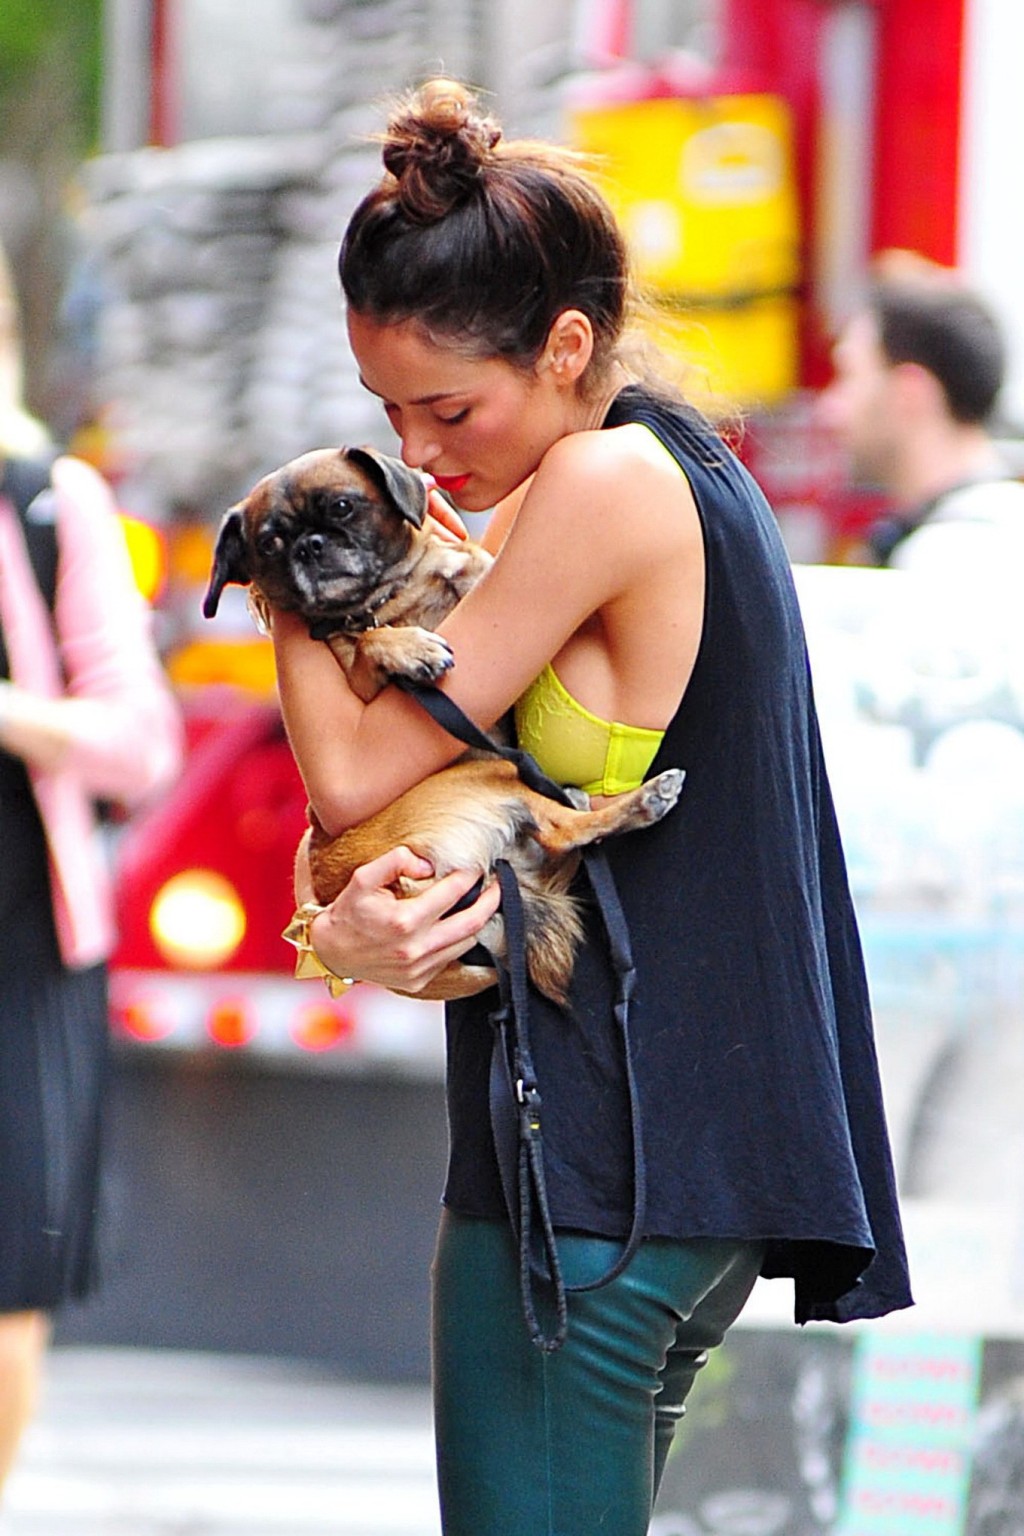 Nicole trunfio zeigt BH-Spitze beim Petting ihres Hundes in Soho
 #75250619